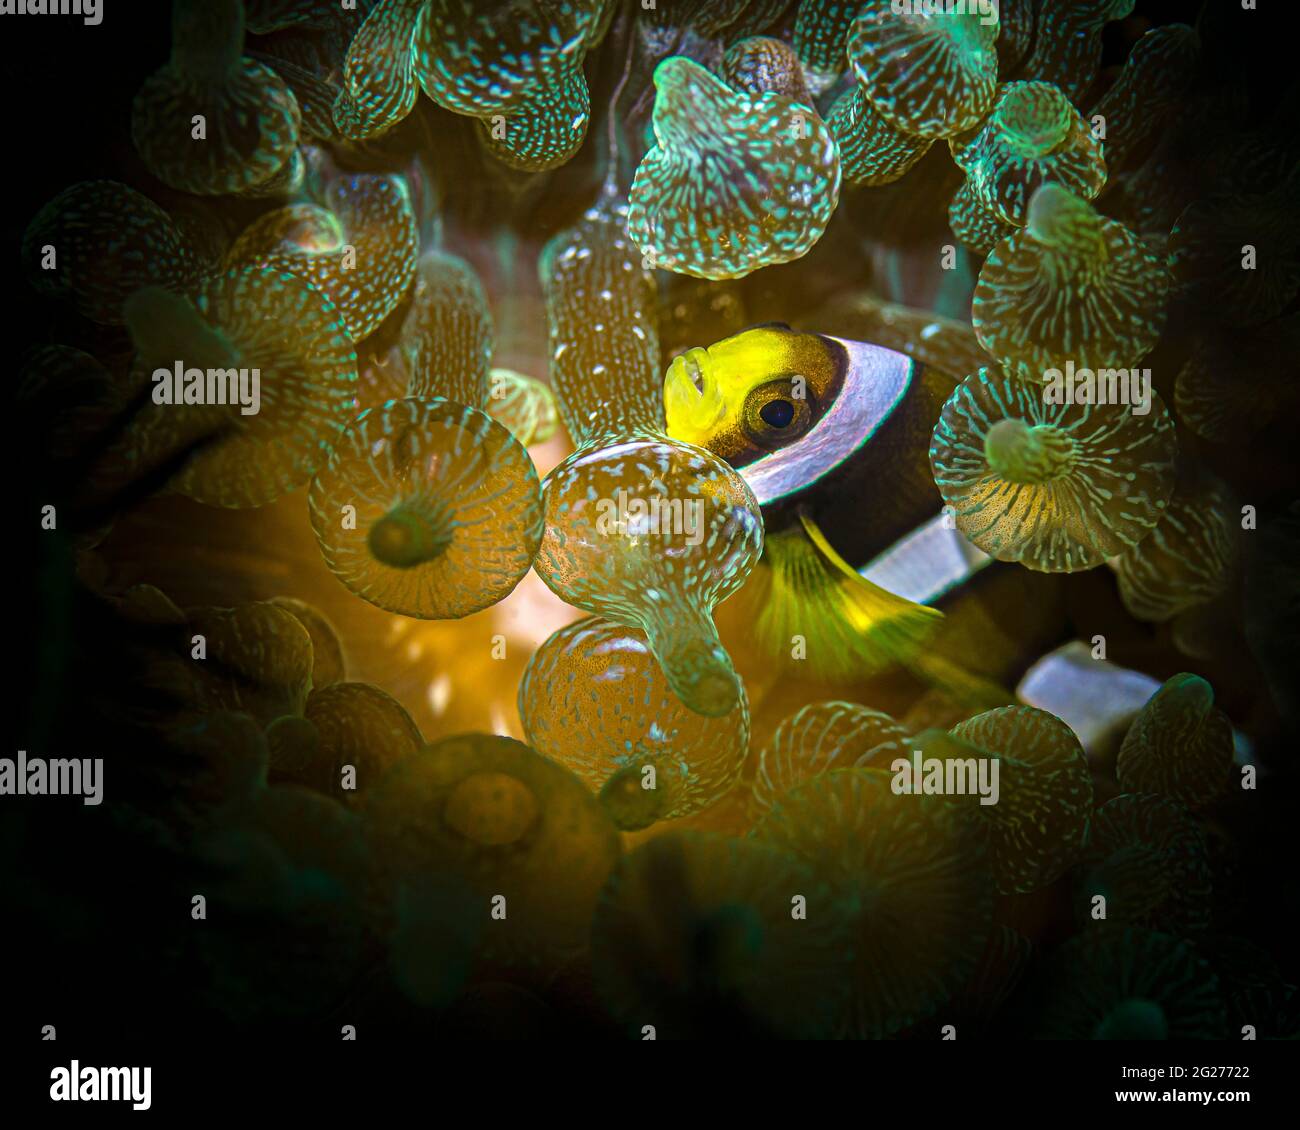 Aniao (Philippines), espèce juvénile d'anemonefish Clarks (Amphiprion clarkii). Banque D'Images